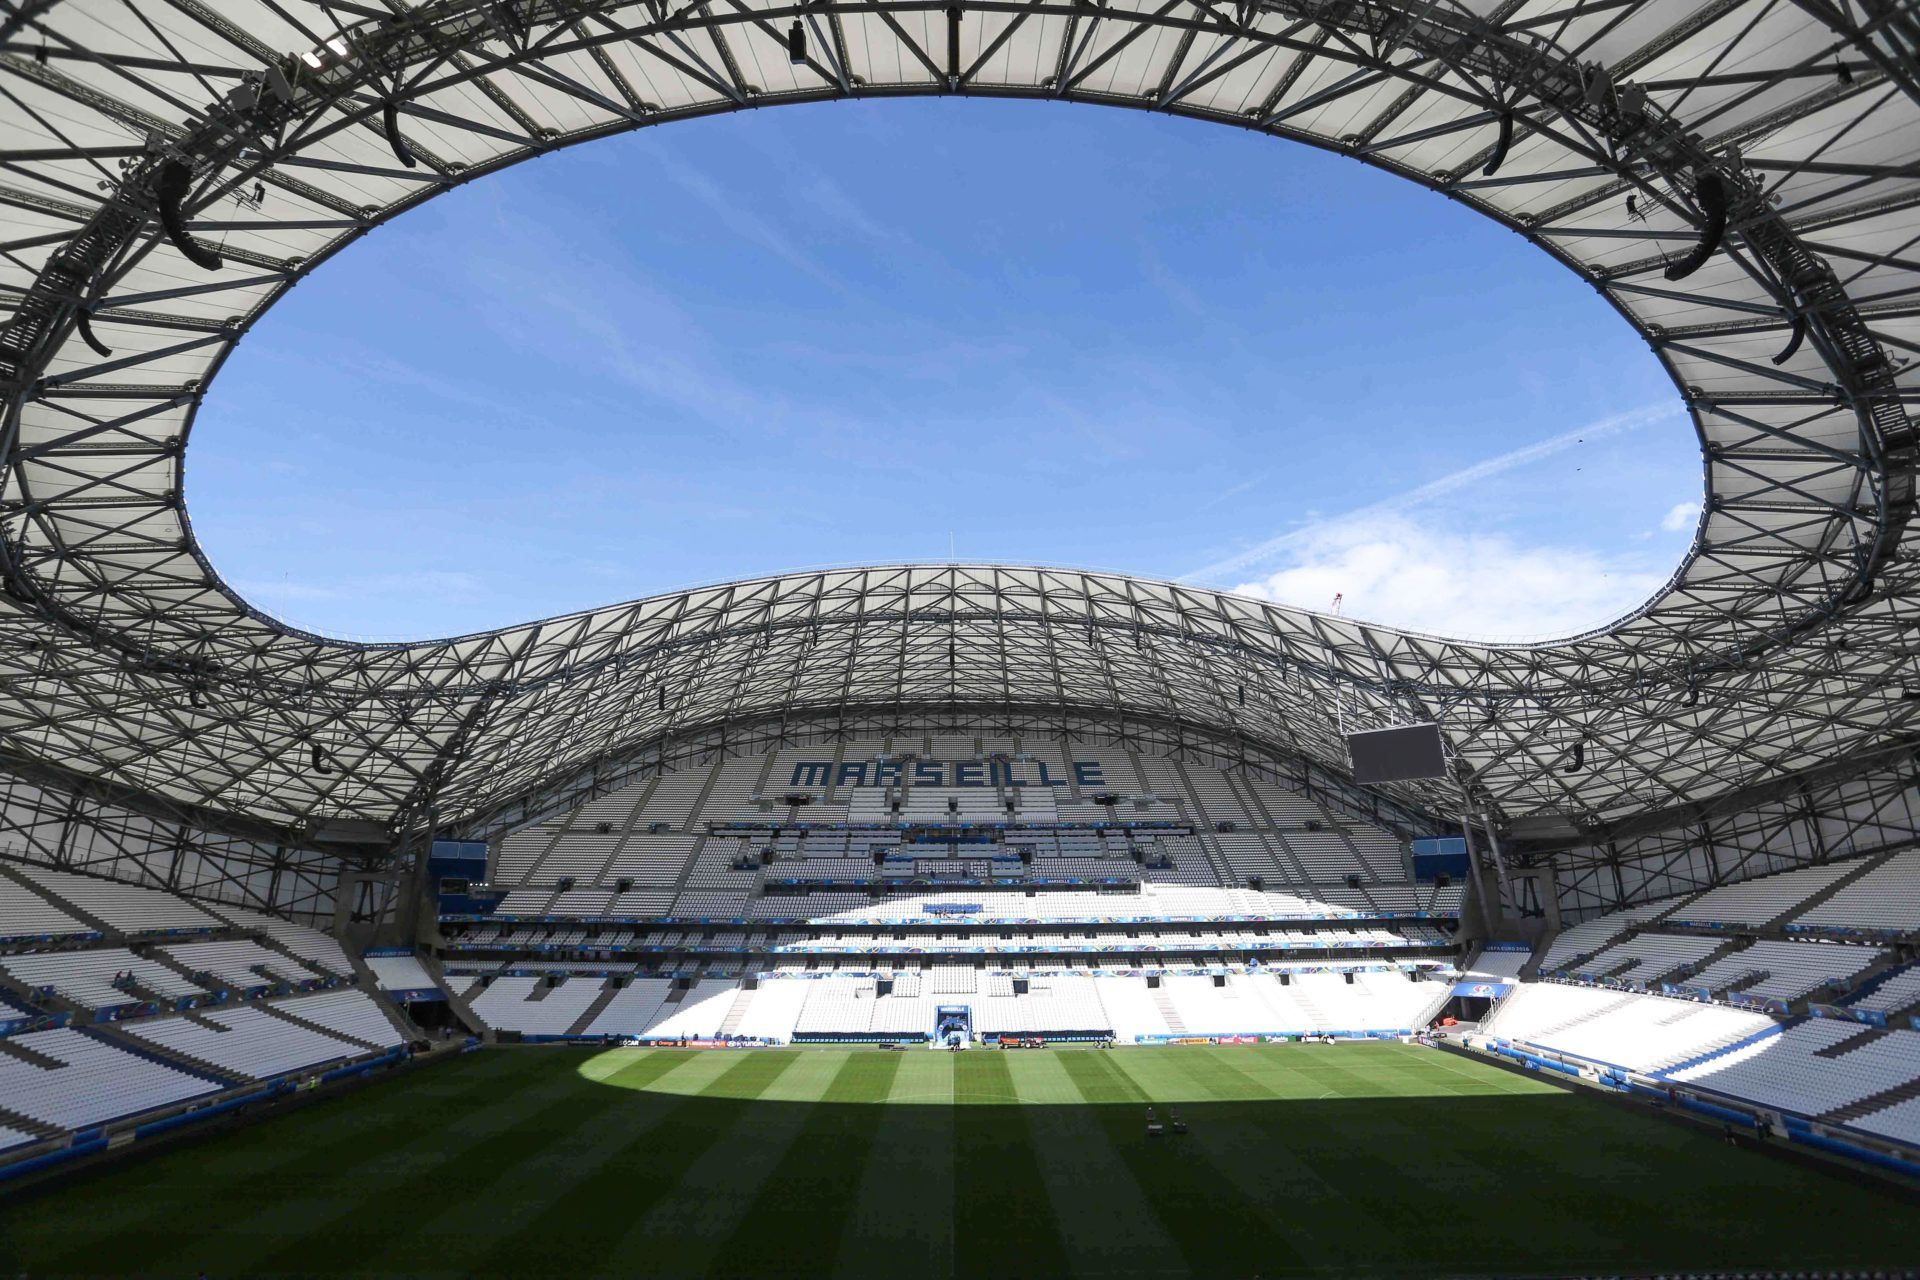 Le nouveau stade Vélodrome inauguré à Marseille